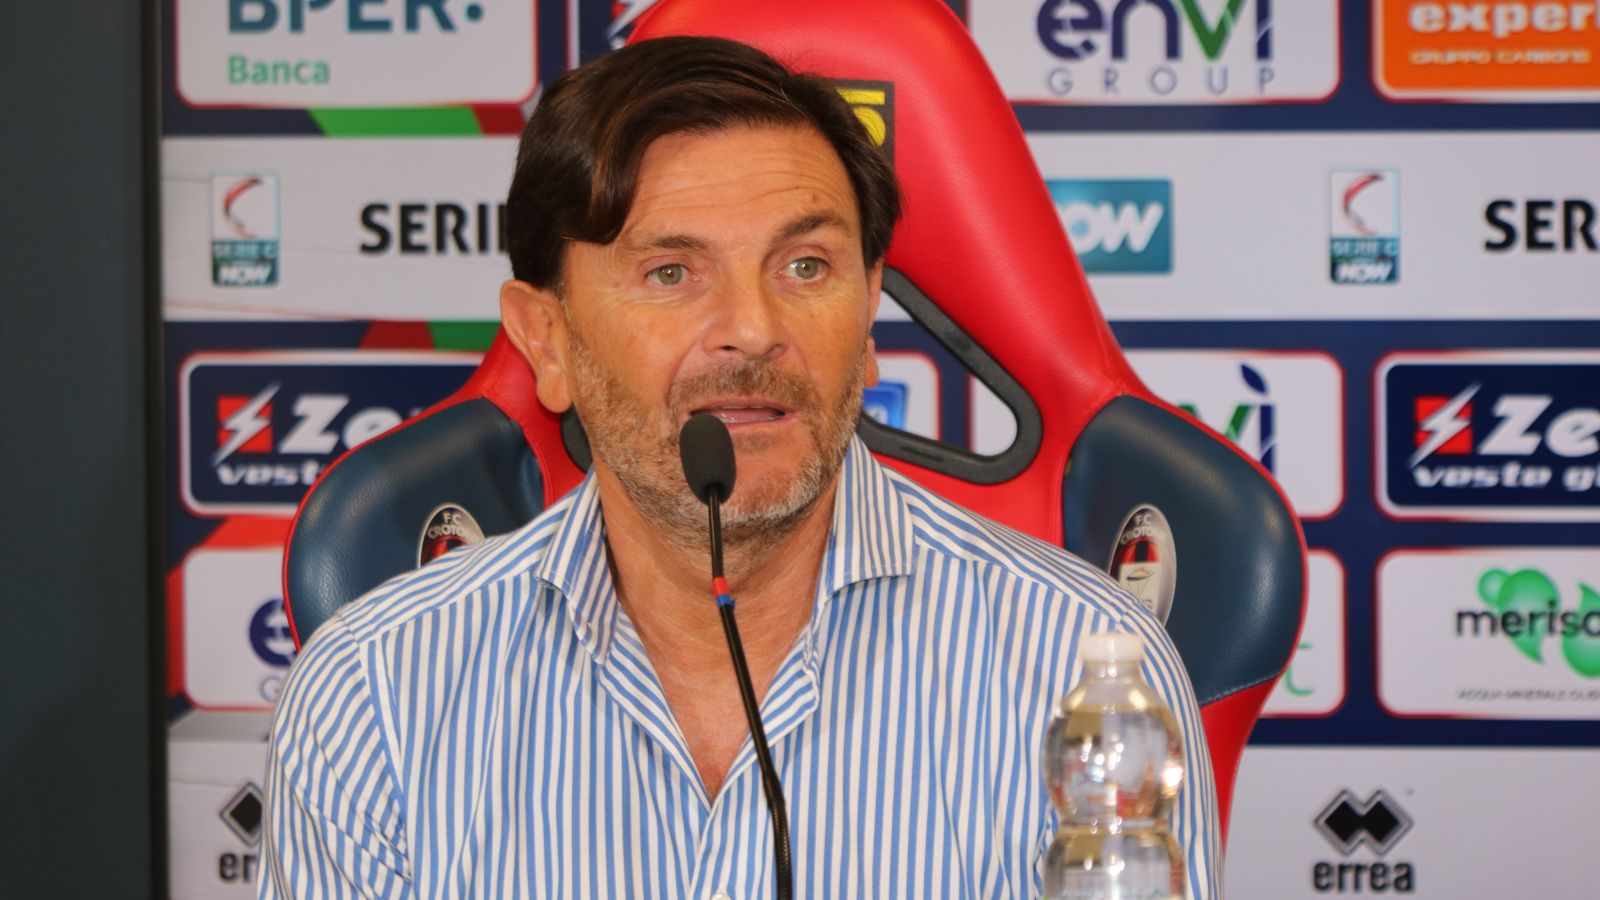 Di Bari Giuseppe – Direttore Sportivo – presentazione – Foto FC Crotone 07.09.23